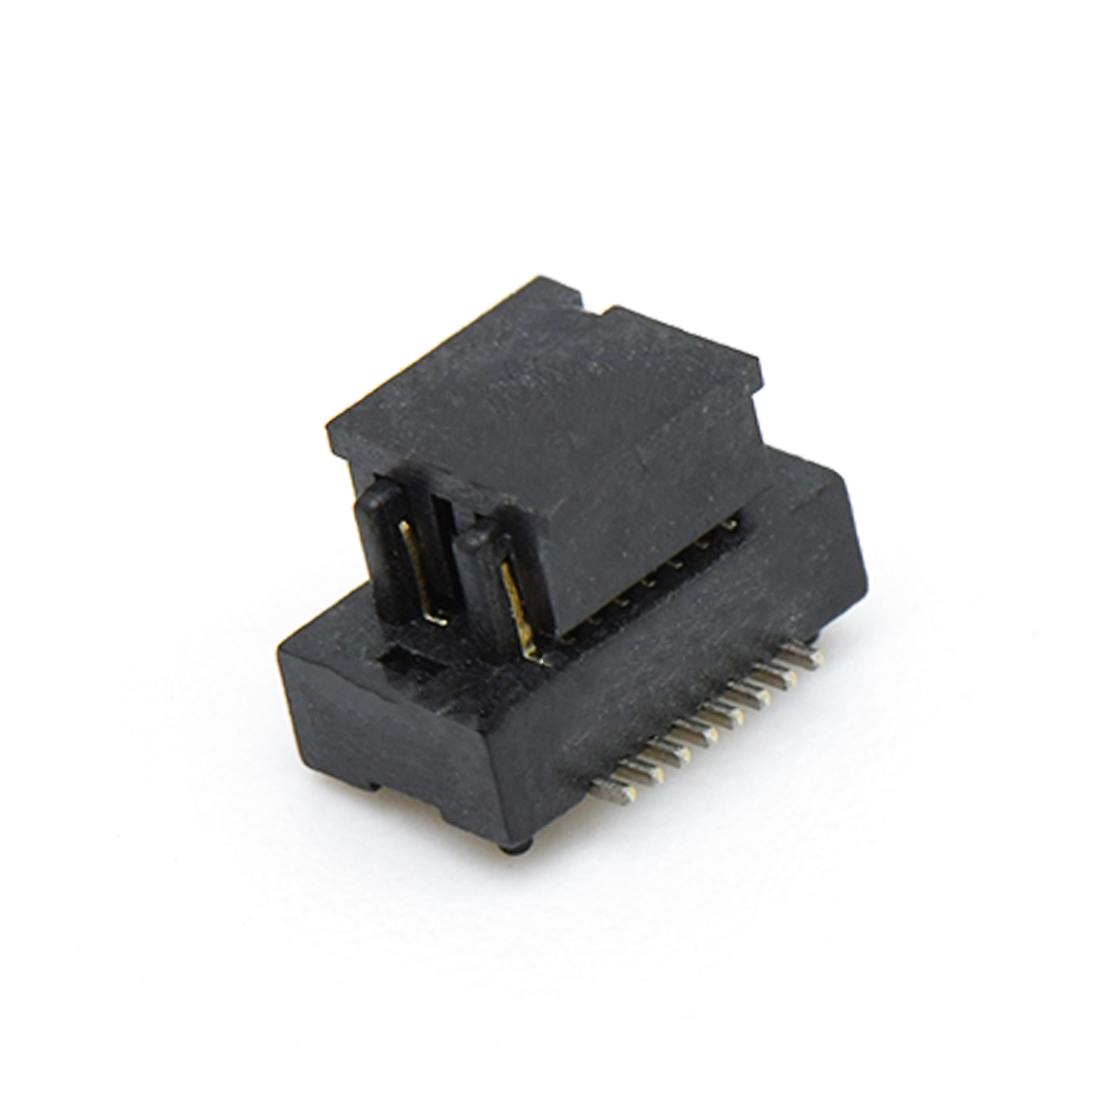 B0502板对板连接器Pitch 0.5 H2.0mm双槽双排 SMT型公座 16Pin黑色 Gold flash